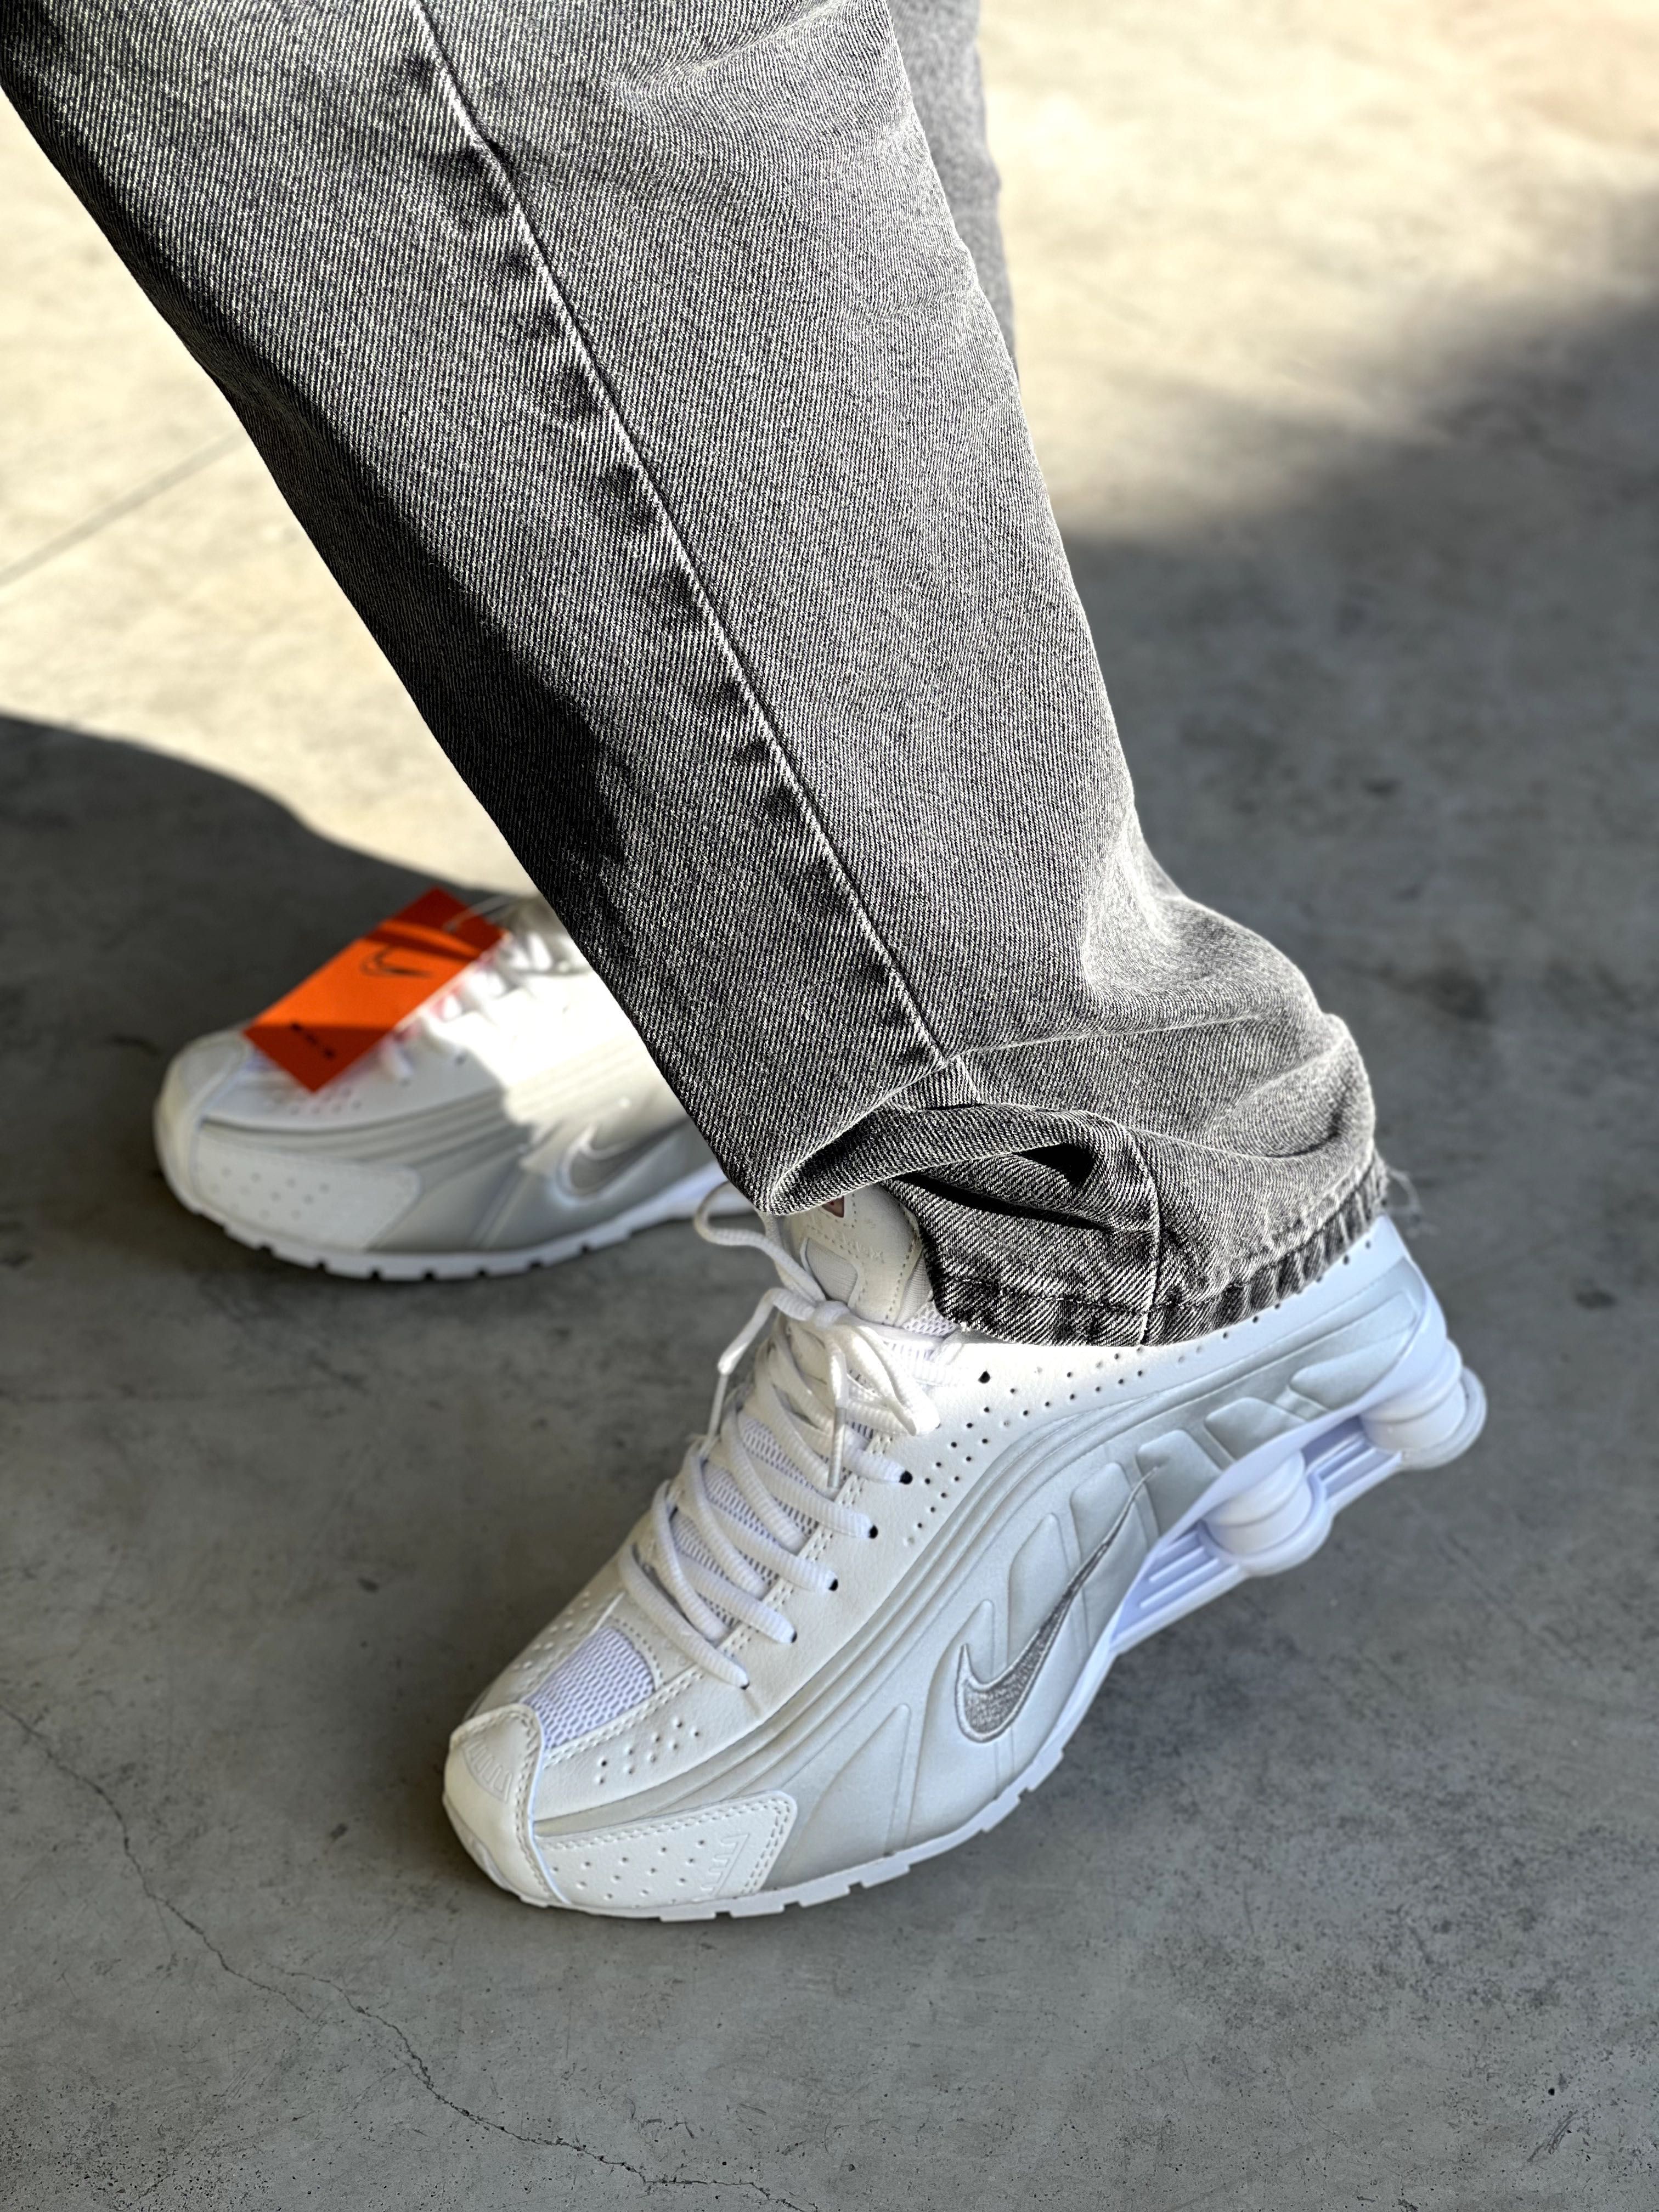 Мужские кроссовки Nike Shox r4 white. Размеры 41-45